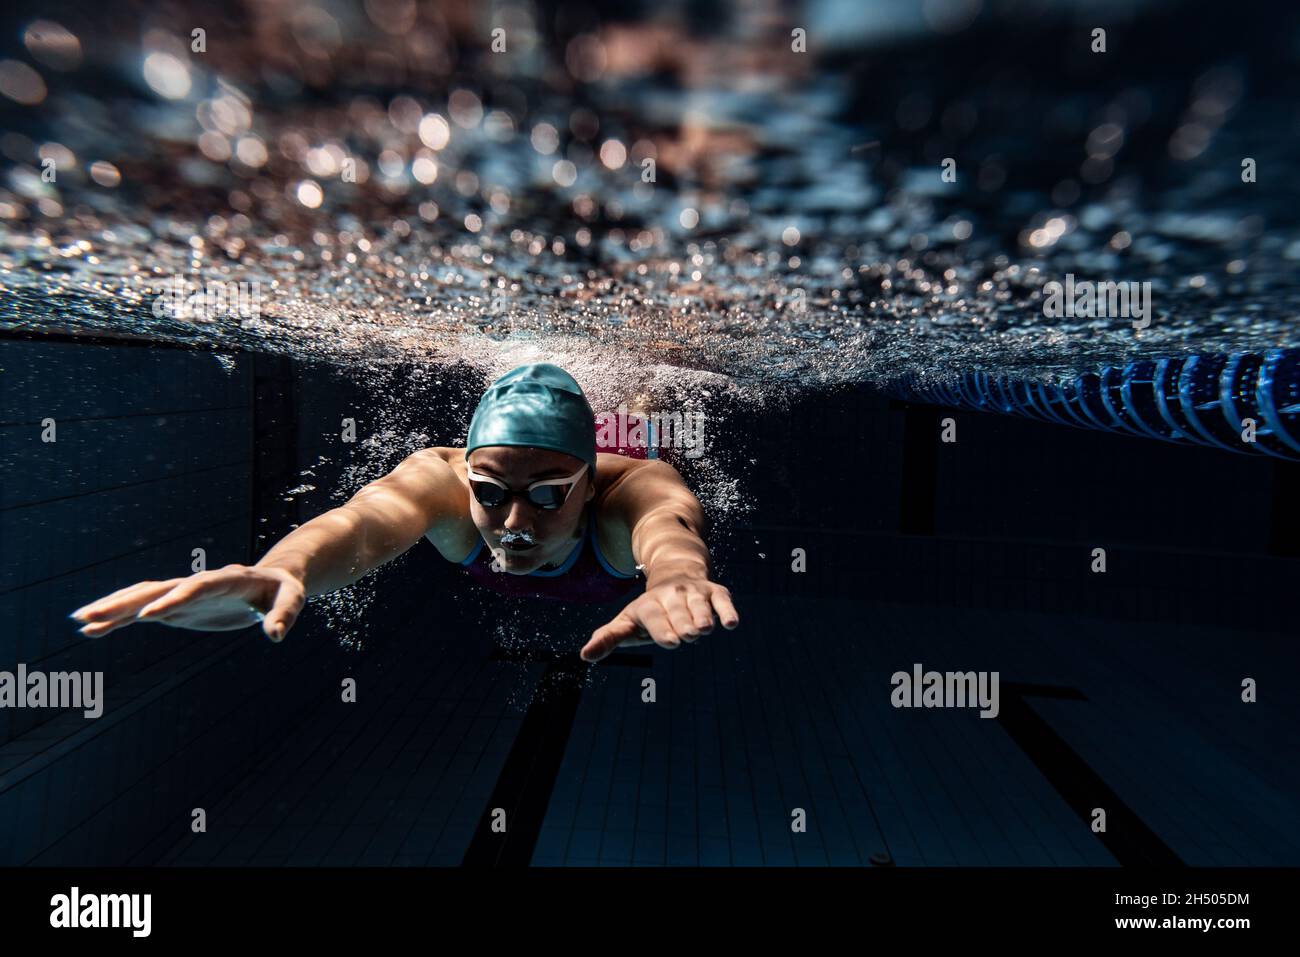 Vista subacquea dei dettagli dei movimenti di nuoto. Una nuotatrice femminile in piscina, al coperto, con berretto da nuoto e occhialini. Foto Stock